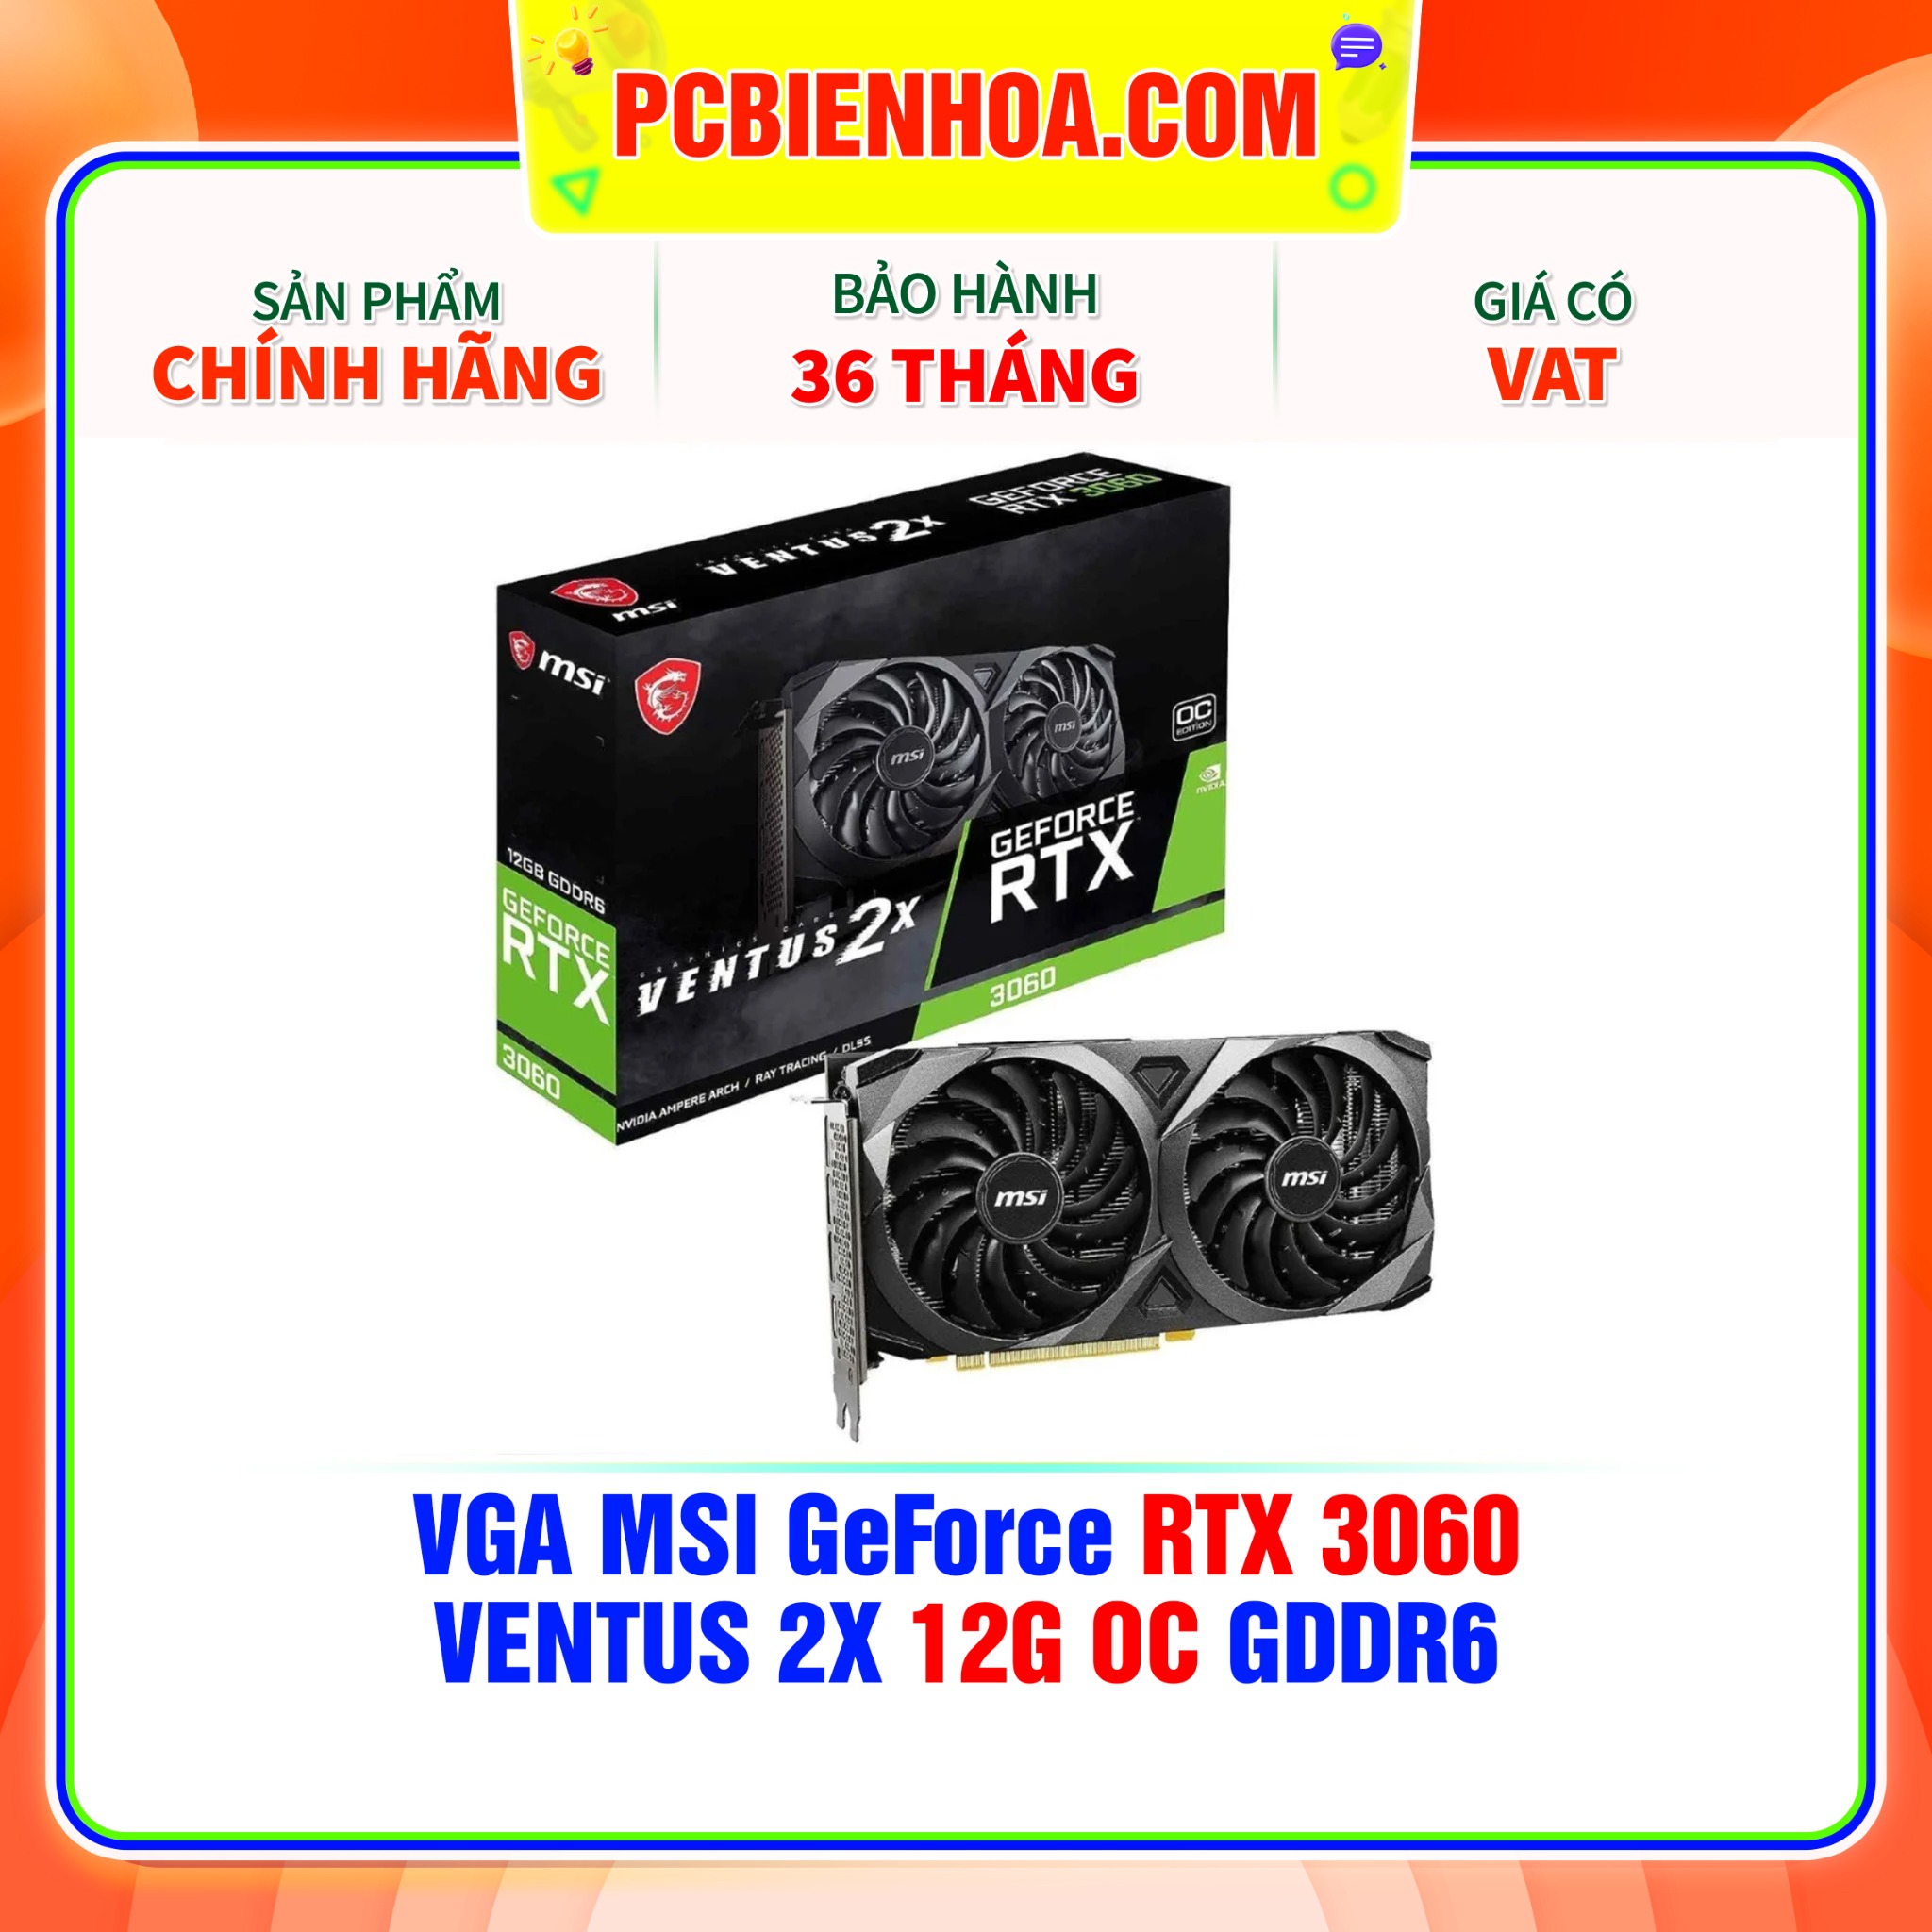 VGA MSI GeForce RTX 3060 VENTUS 2X 12G OC GDDR6